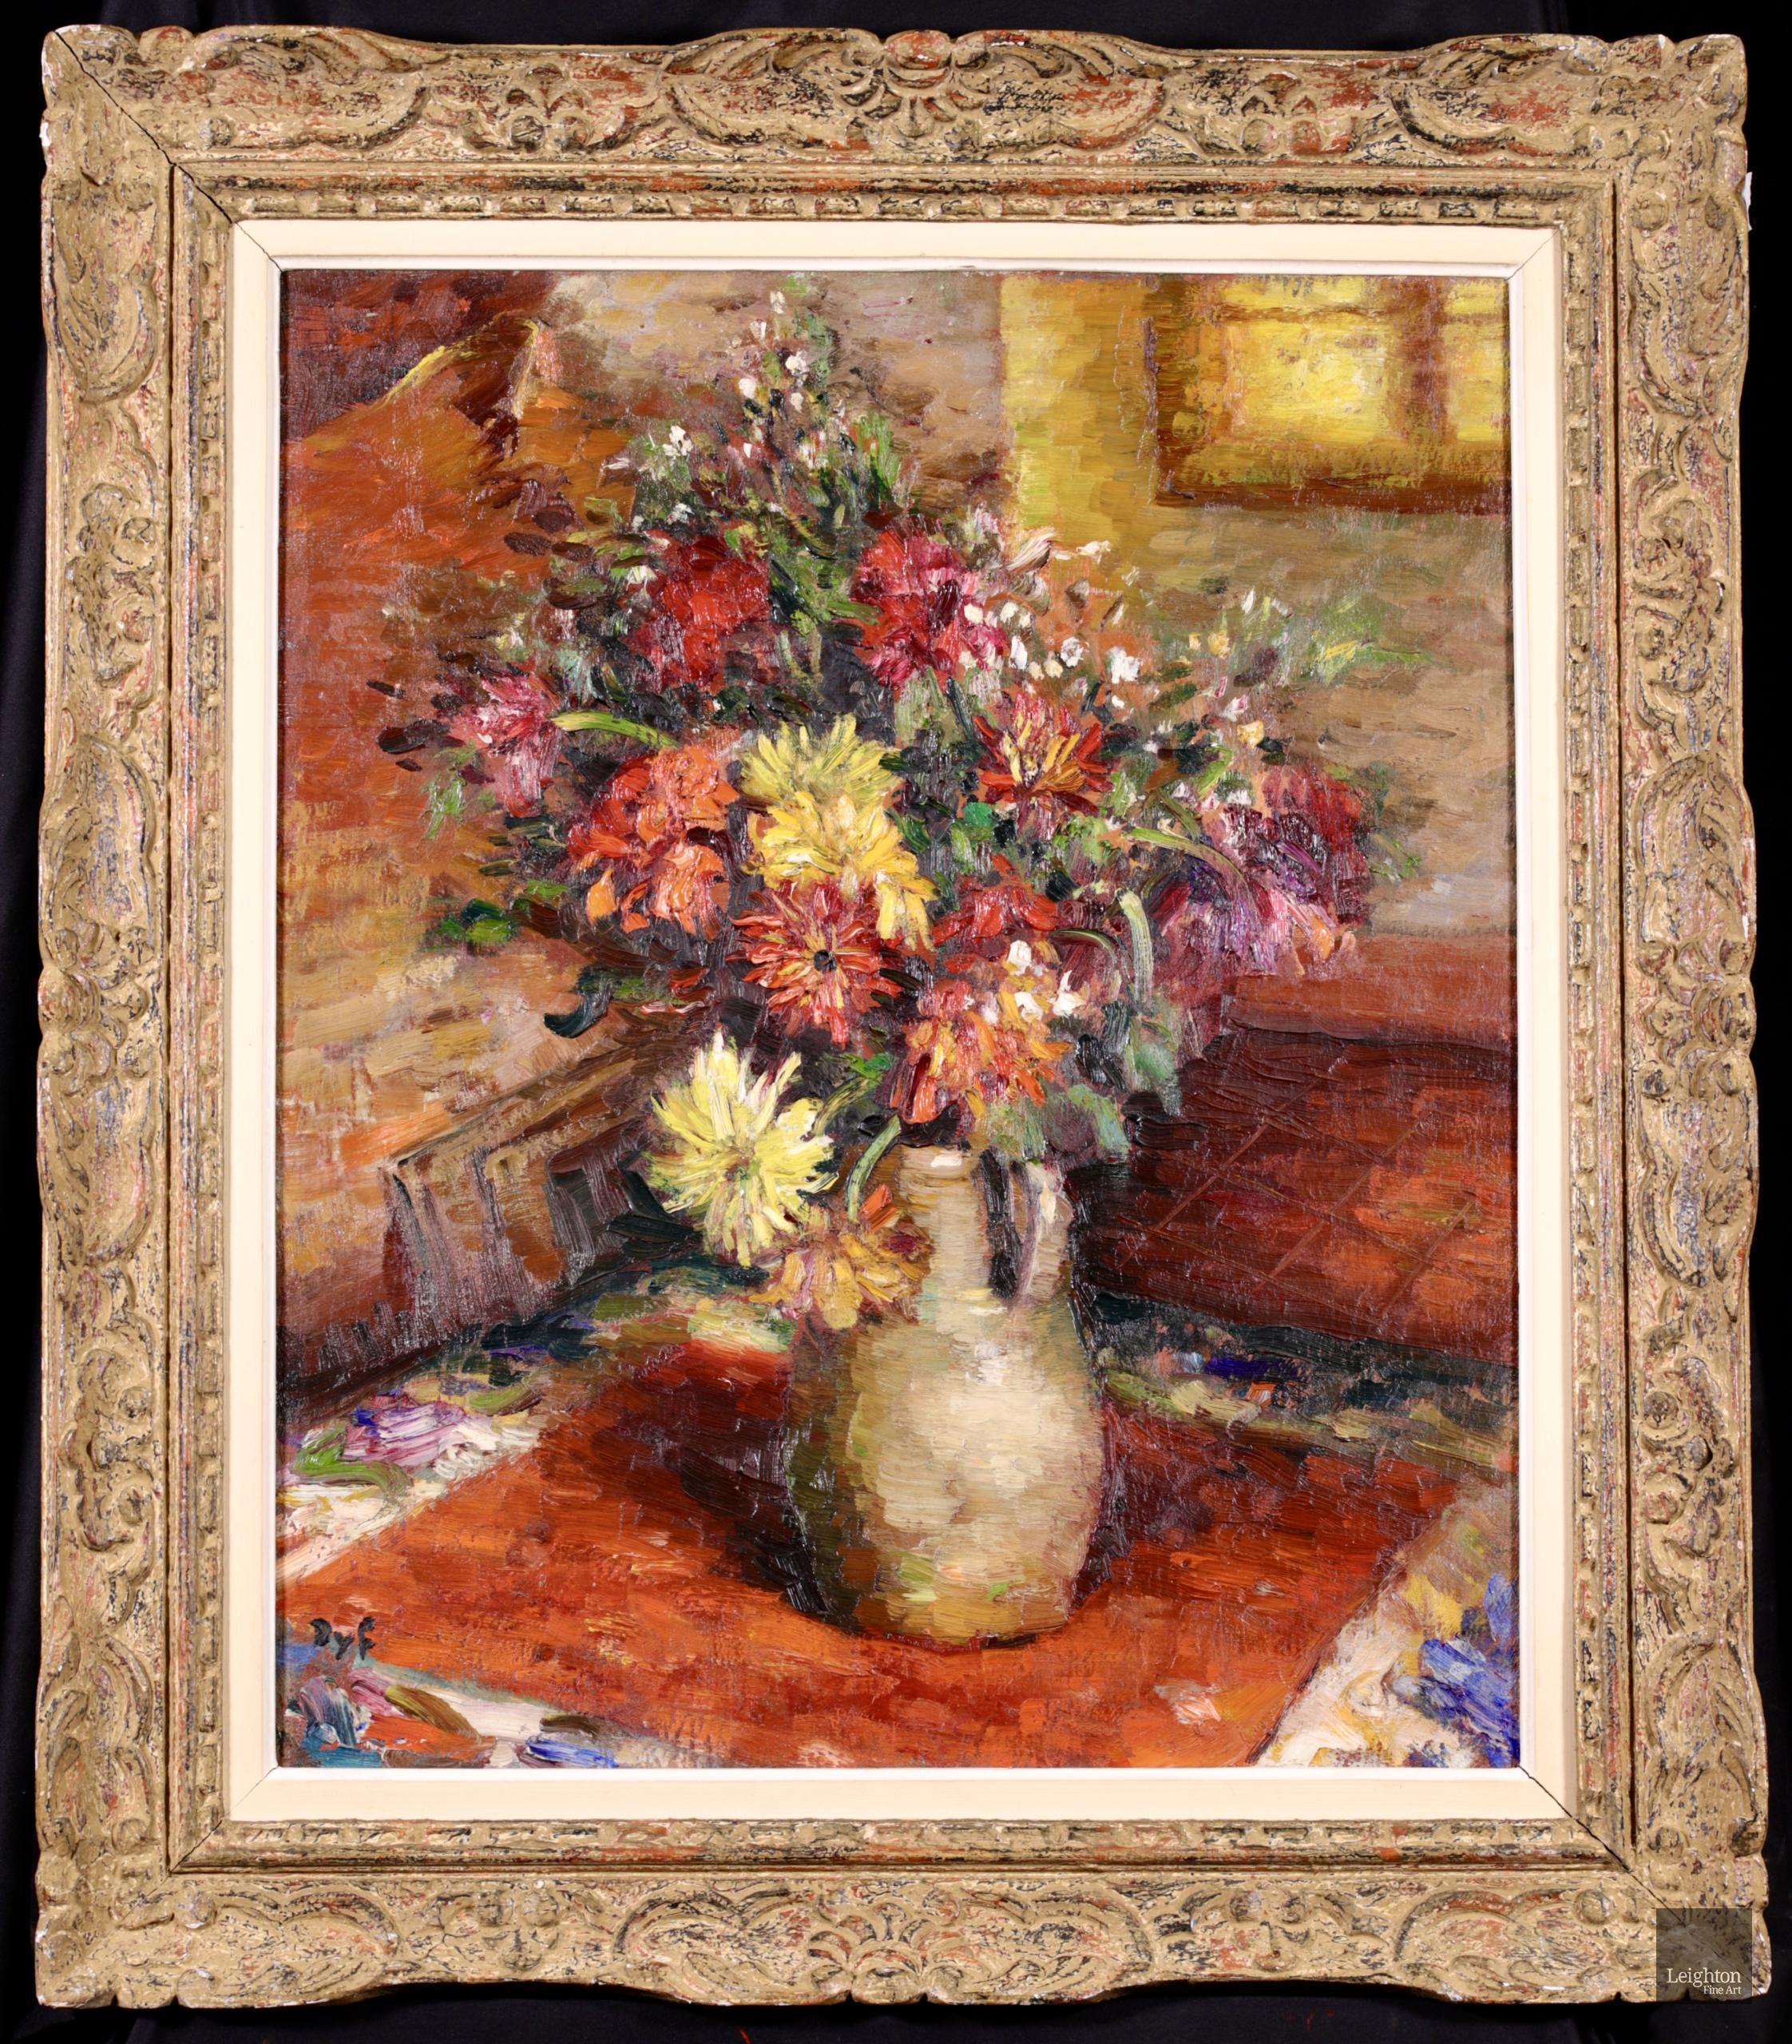 Großes signiertes Blumenstillleben in Öl auf Leinwand um 1950 von dem französischen postimpressionistischen Maler Marcel Dyf. Das Werk zeigt einen Strauß Dahlien in Rot- und Gelbtönen in einem goldenen Krug, der auf einem Tisch am Fenster